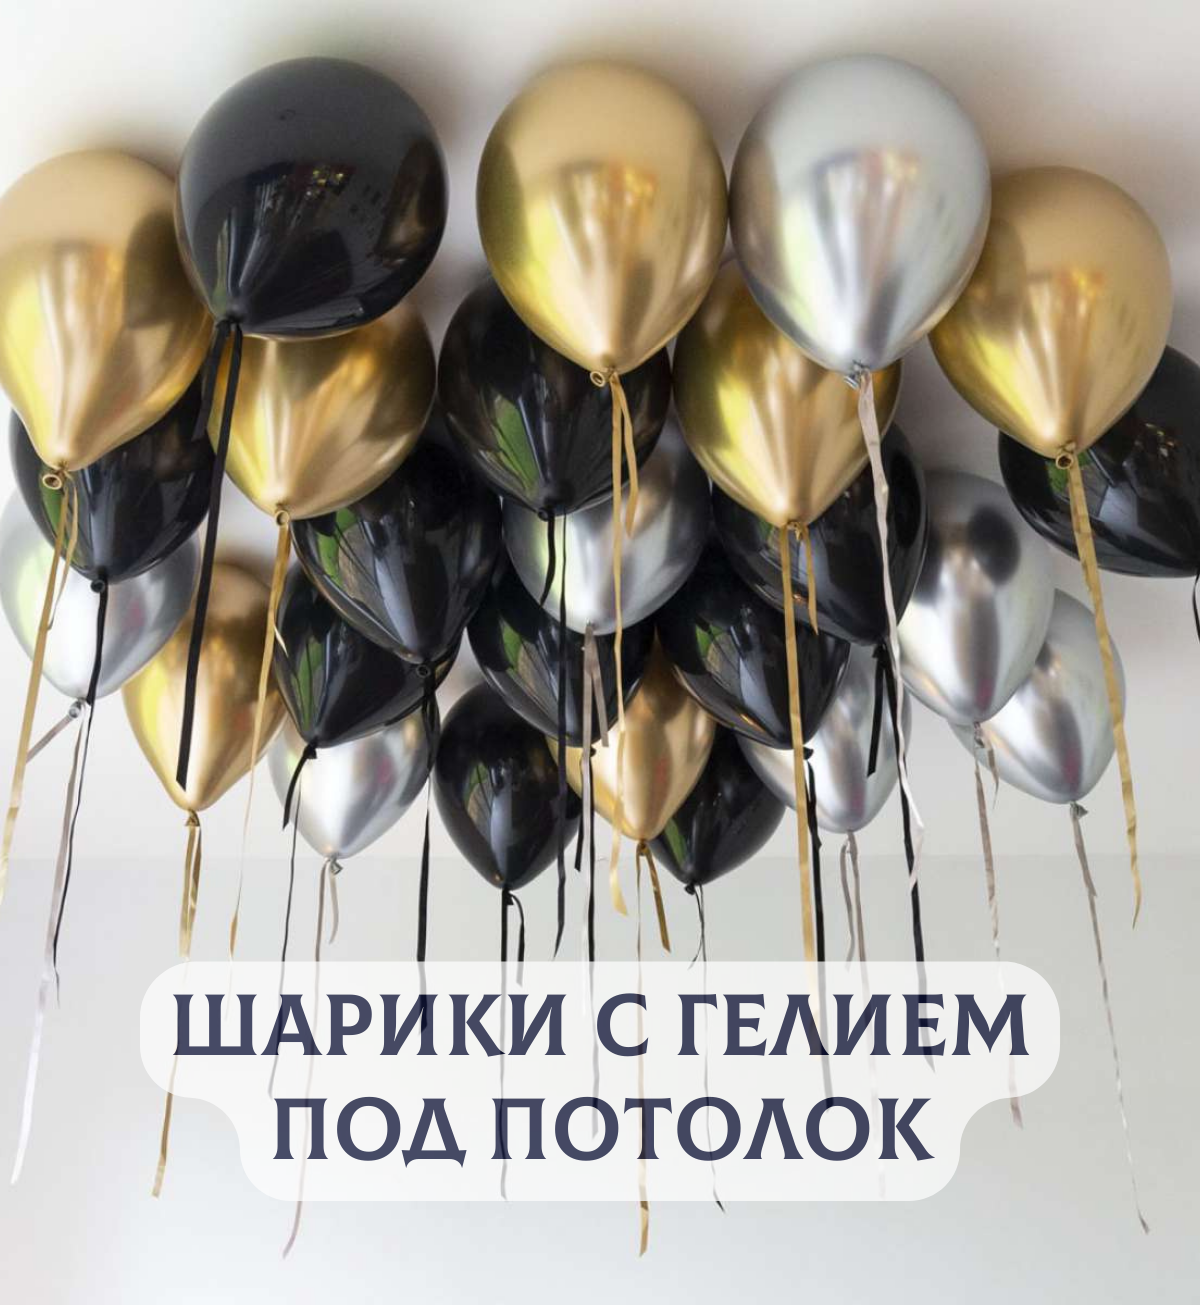 Воздушные шары с гелием под потолок для девушки или мужчины "Черные с серебром и золотом" 10 шт.